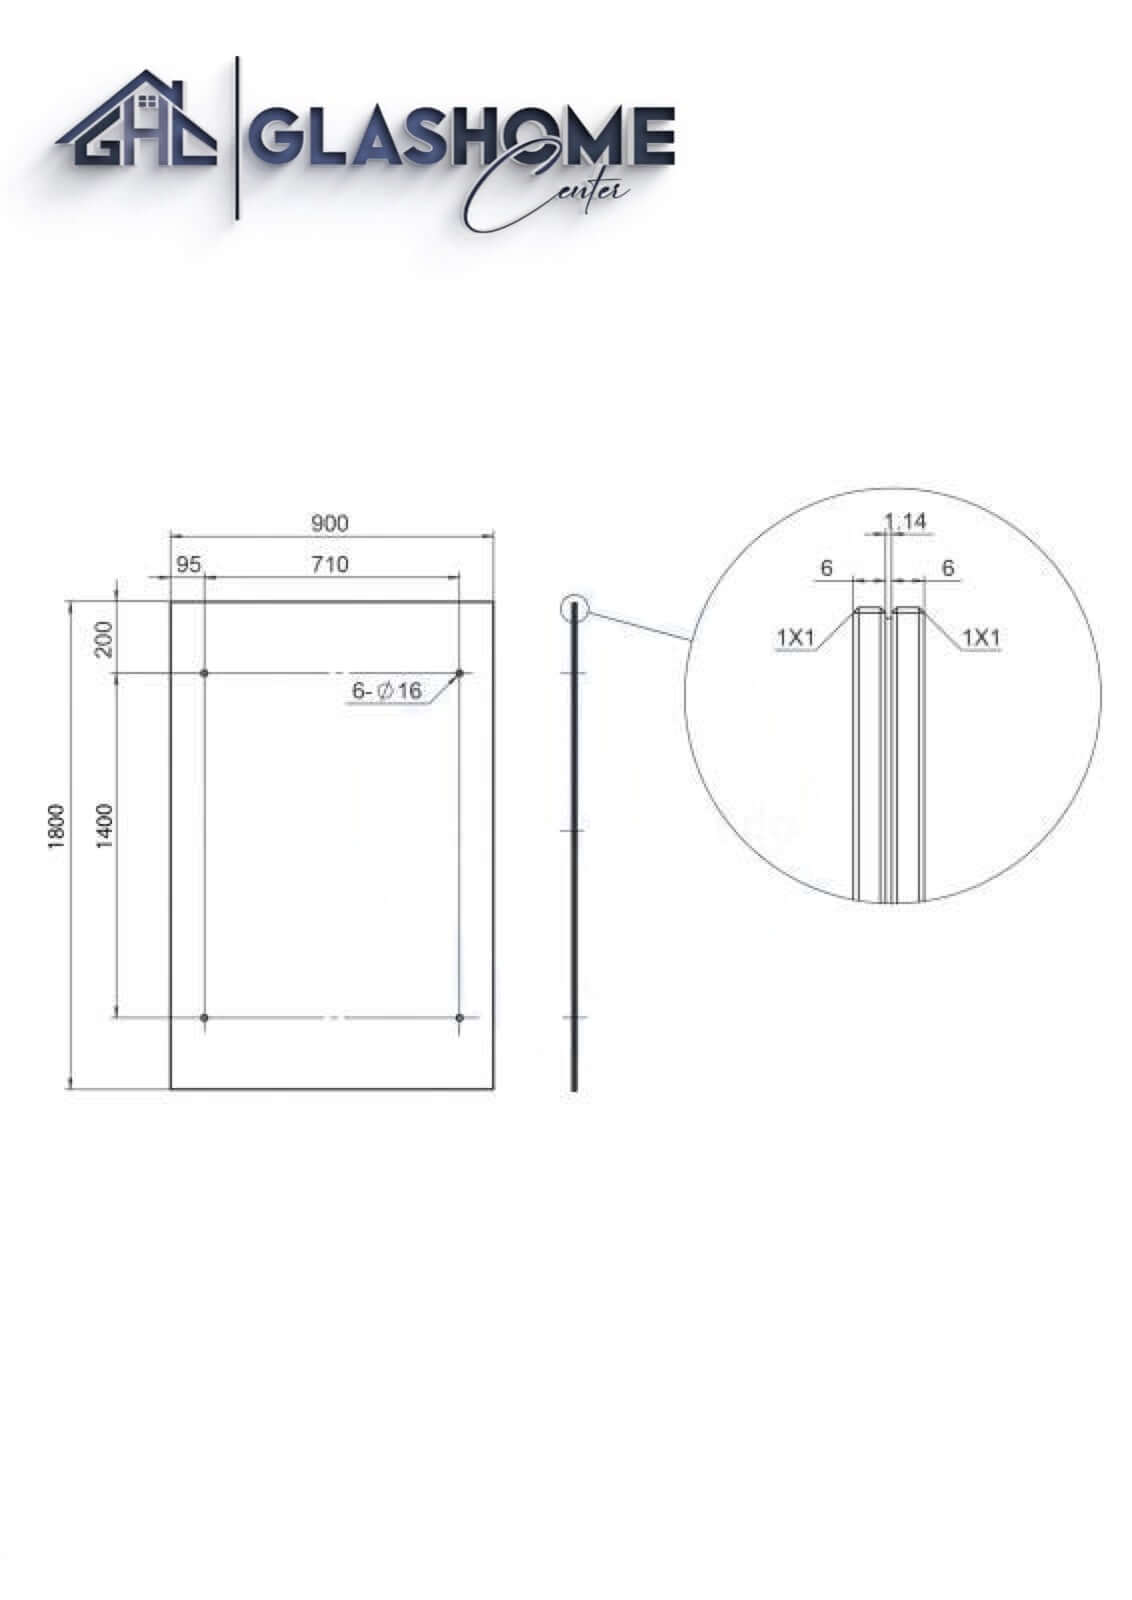 GlasHomeCenter - Glasvordach - Milchglas - 180x90cm - 13,1mm VSG - incl. 2 Edelstahlhalterungen variante "Rom"